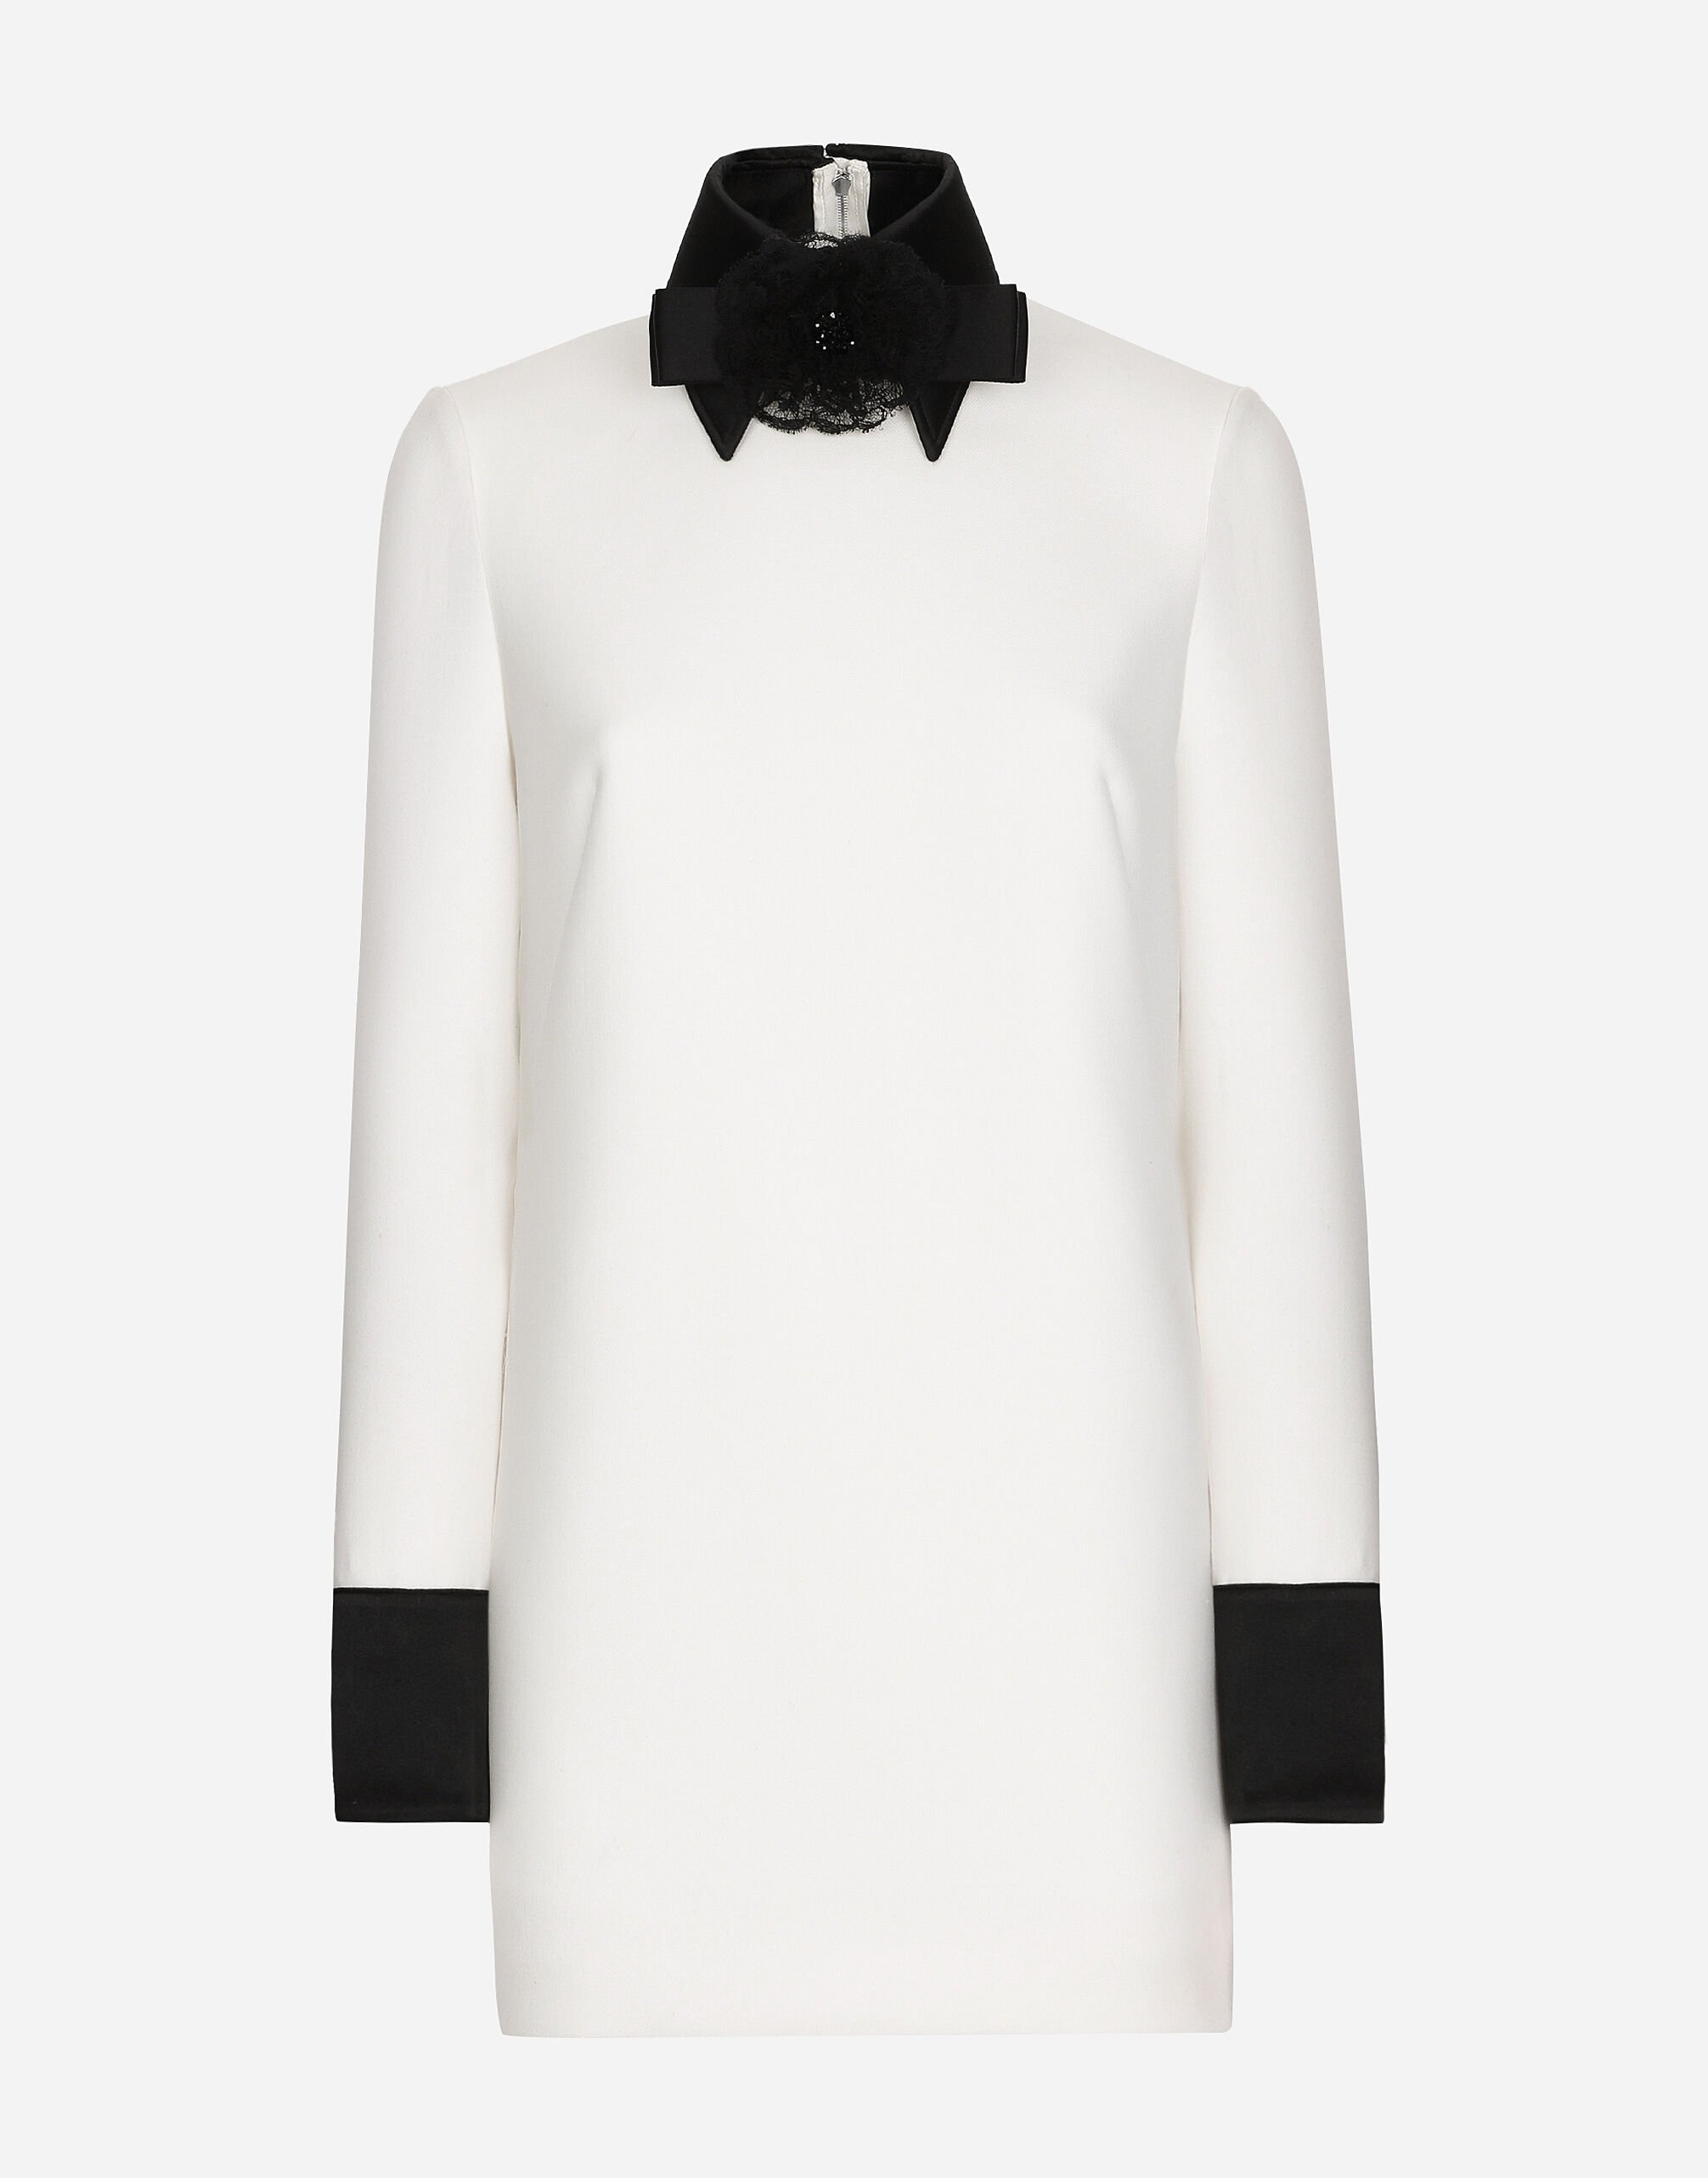 Dolce & Gabbana Short woolen dress with satin details Print F6AHOTHS5NK